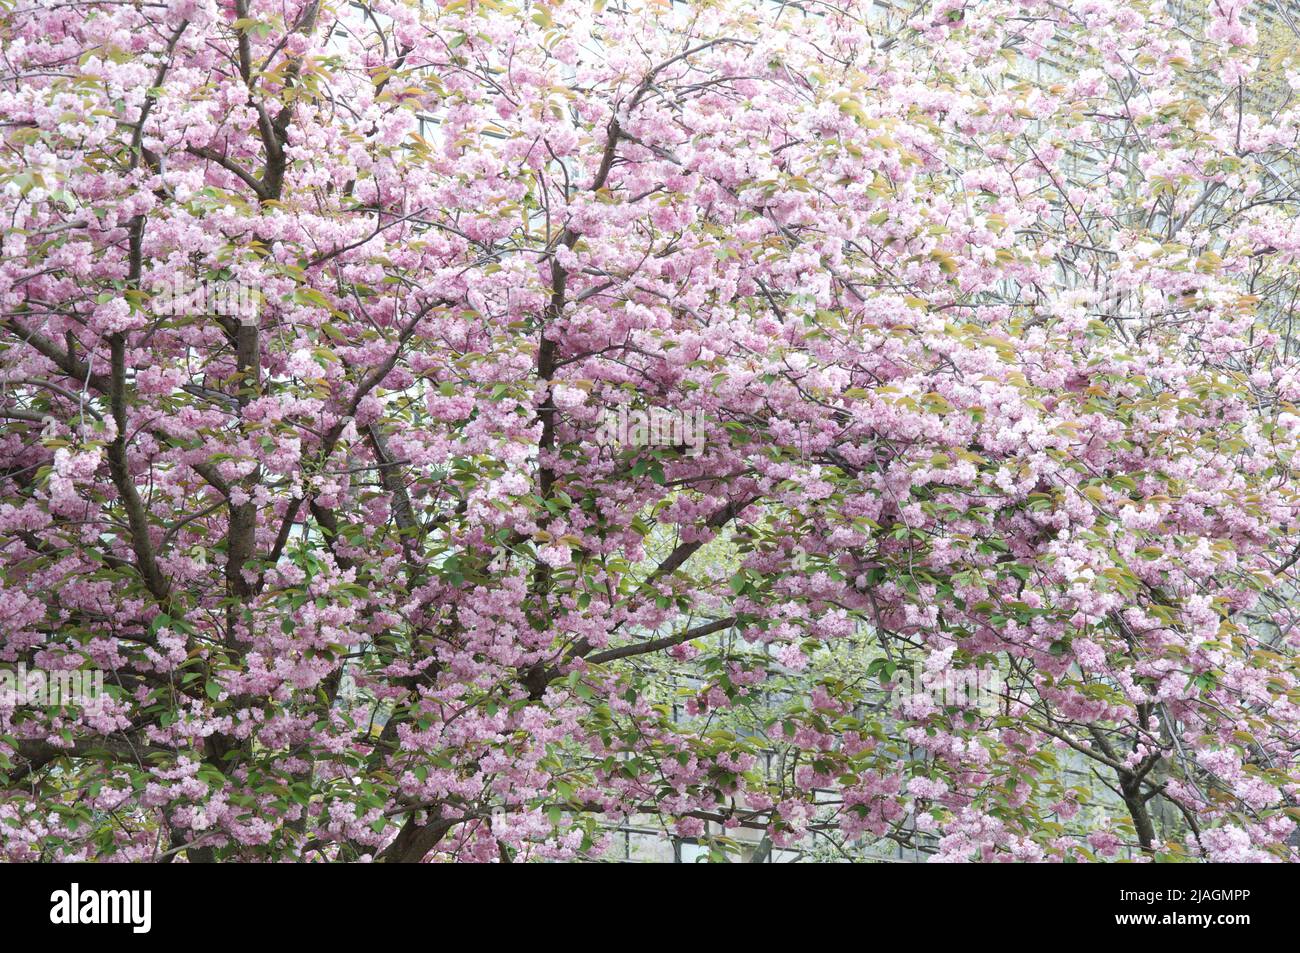 Primavera a Parigi: Fiori di ciliegio in fiore. Questi alberi decorativi sono molto tolleranti dell'inquinamento atmosferico, ideale per crescere nelle grandi città. Foto Stock